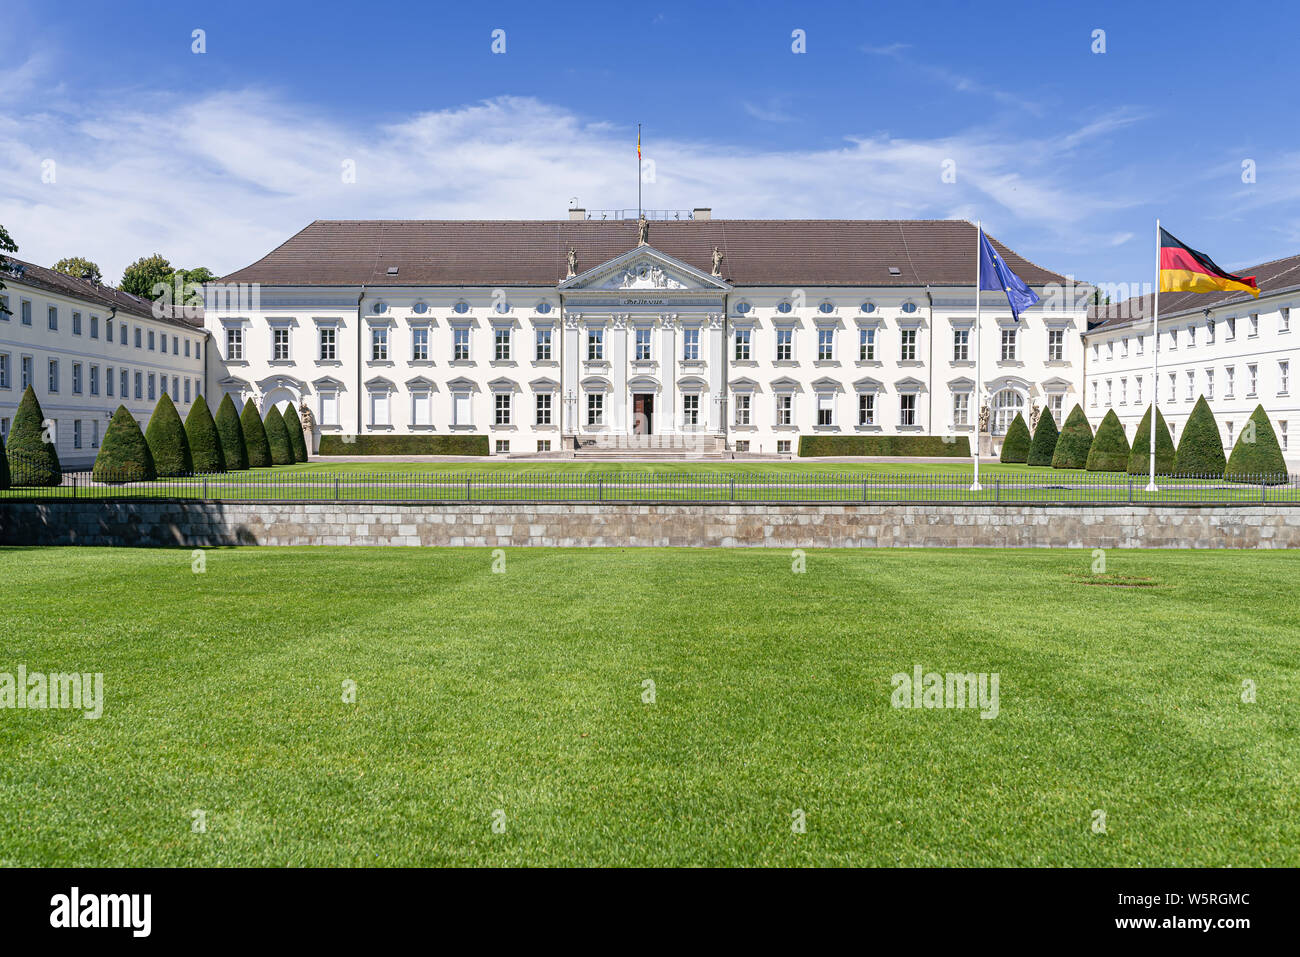 2019-07-24 Berlín, Alemania: Bellevue Palace, el palacio Schloss Bellevue, residencia oficial del Presidente de la República Federal de Alemania Foto de stock